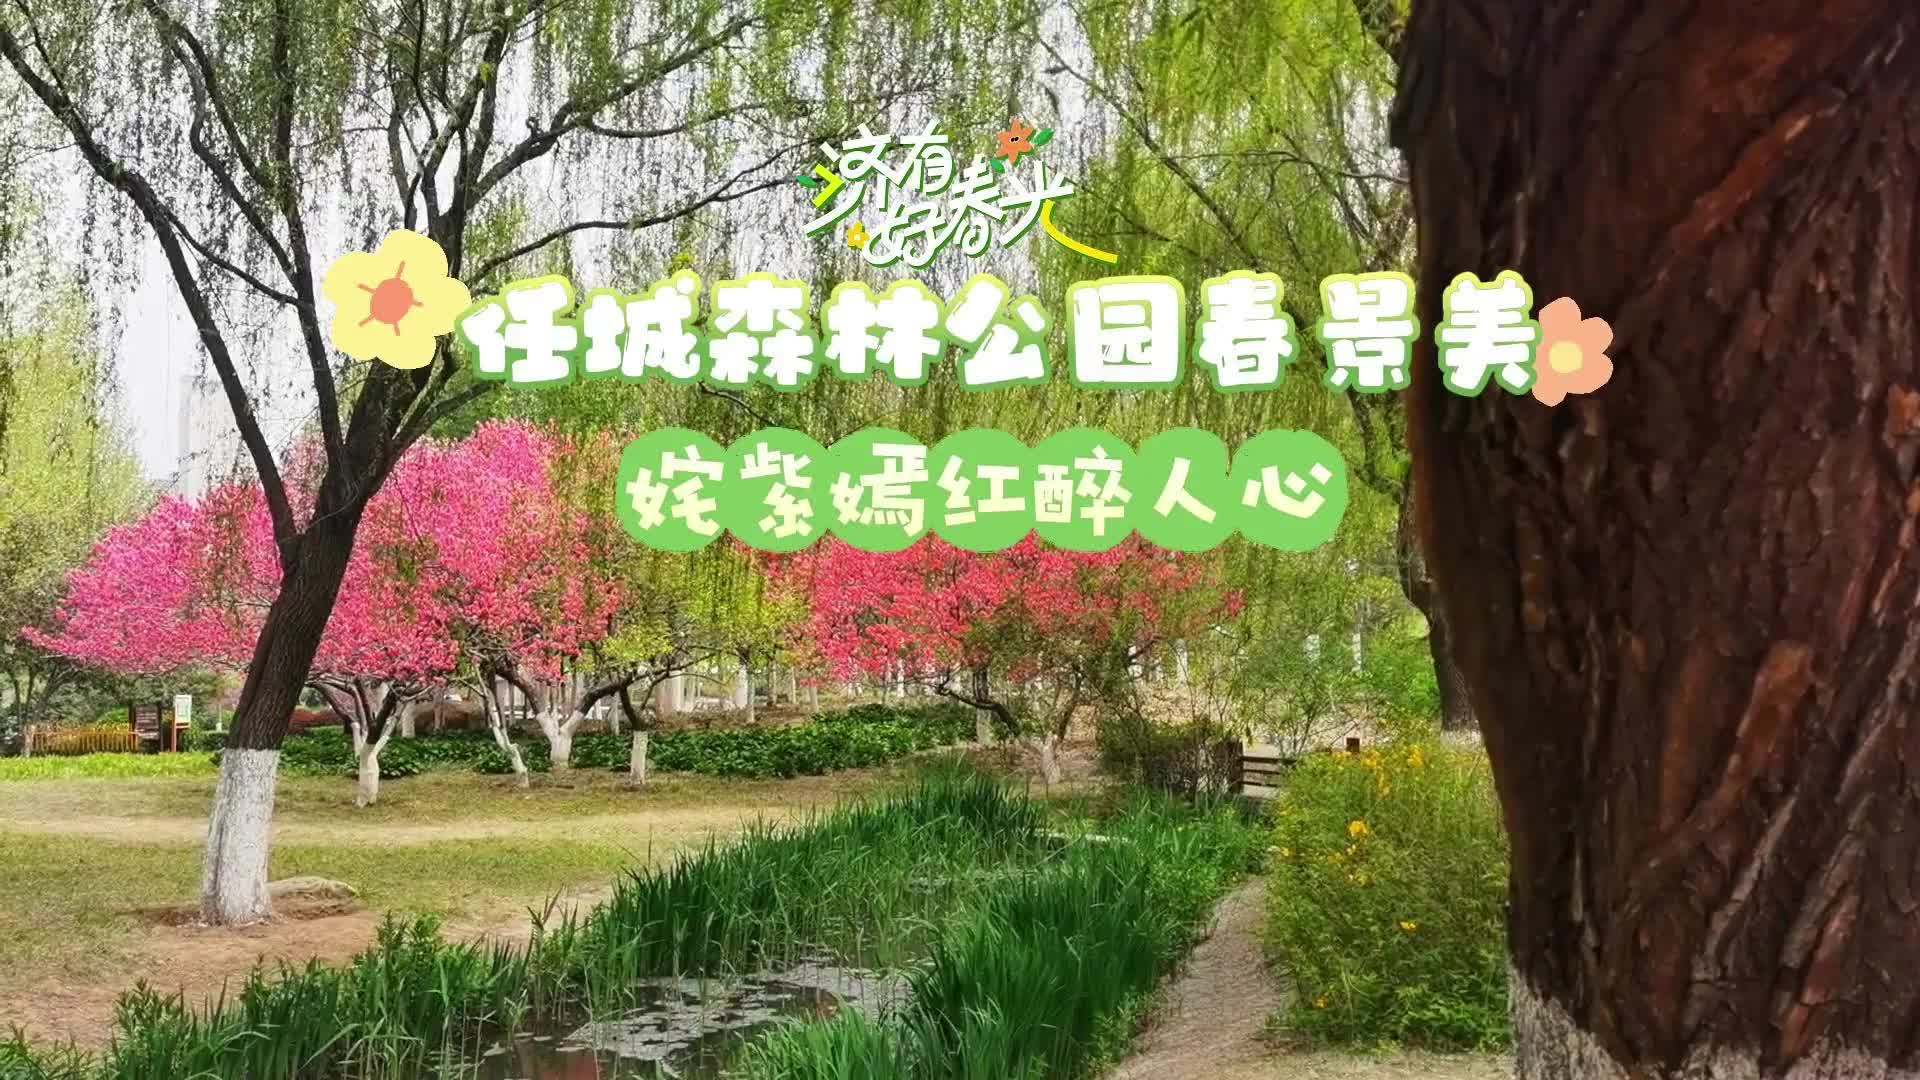 更济宁 | 任城森林公园春景  姹紫嫣红醉人心